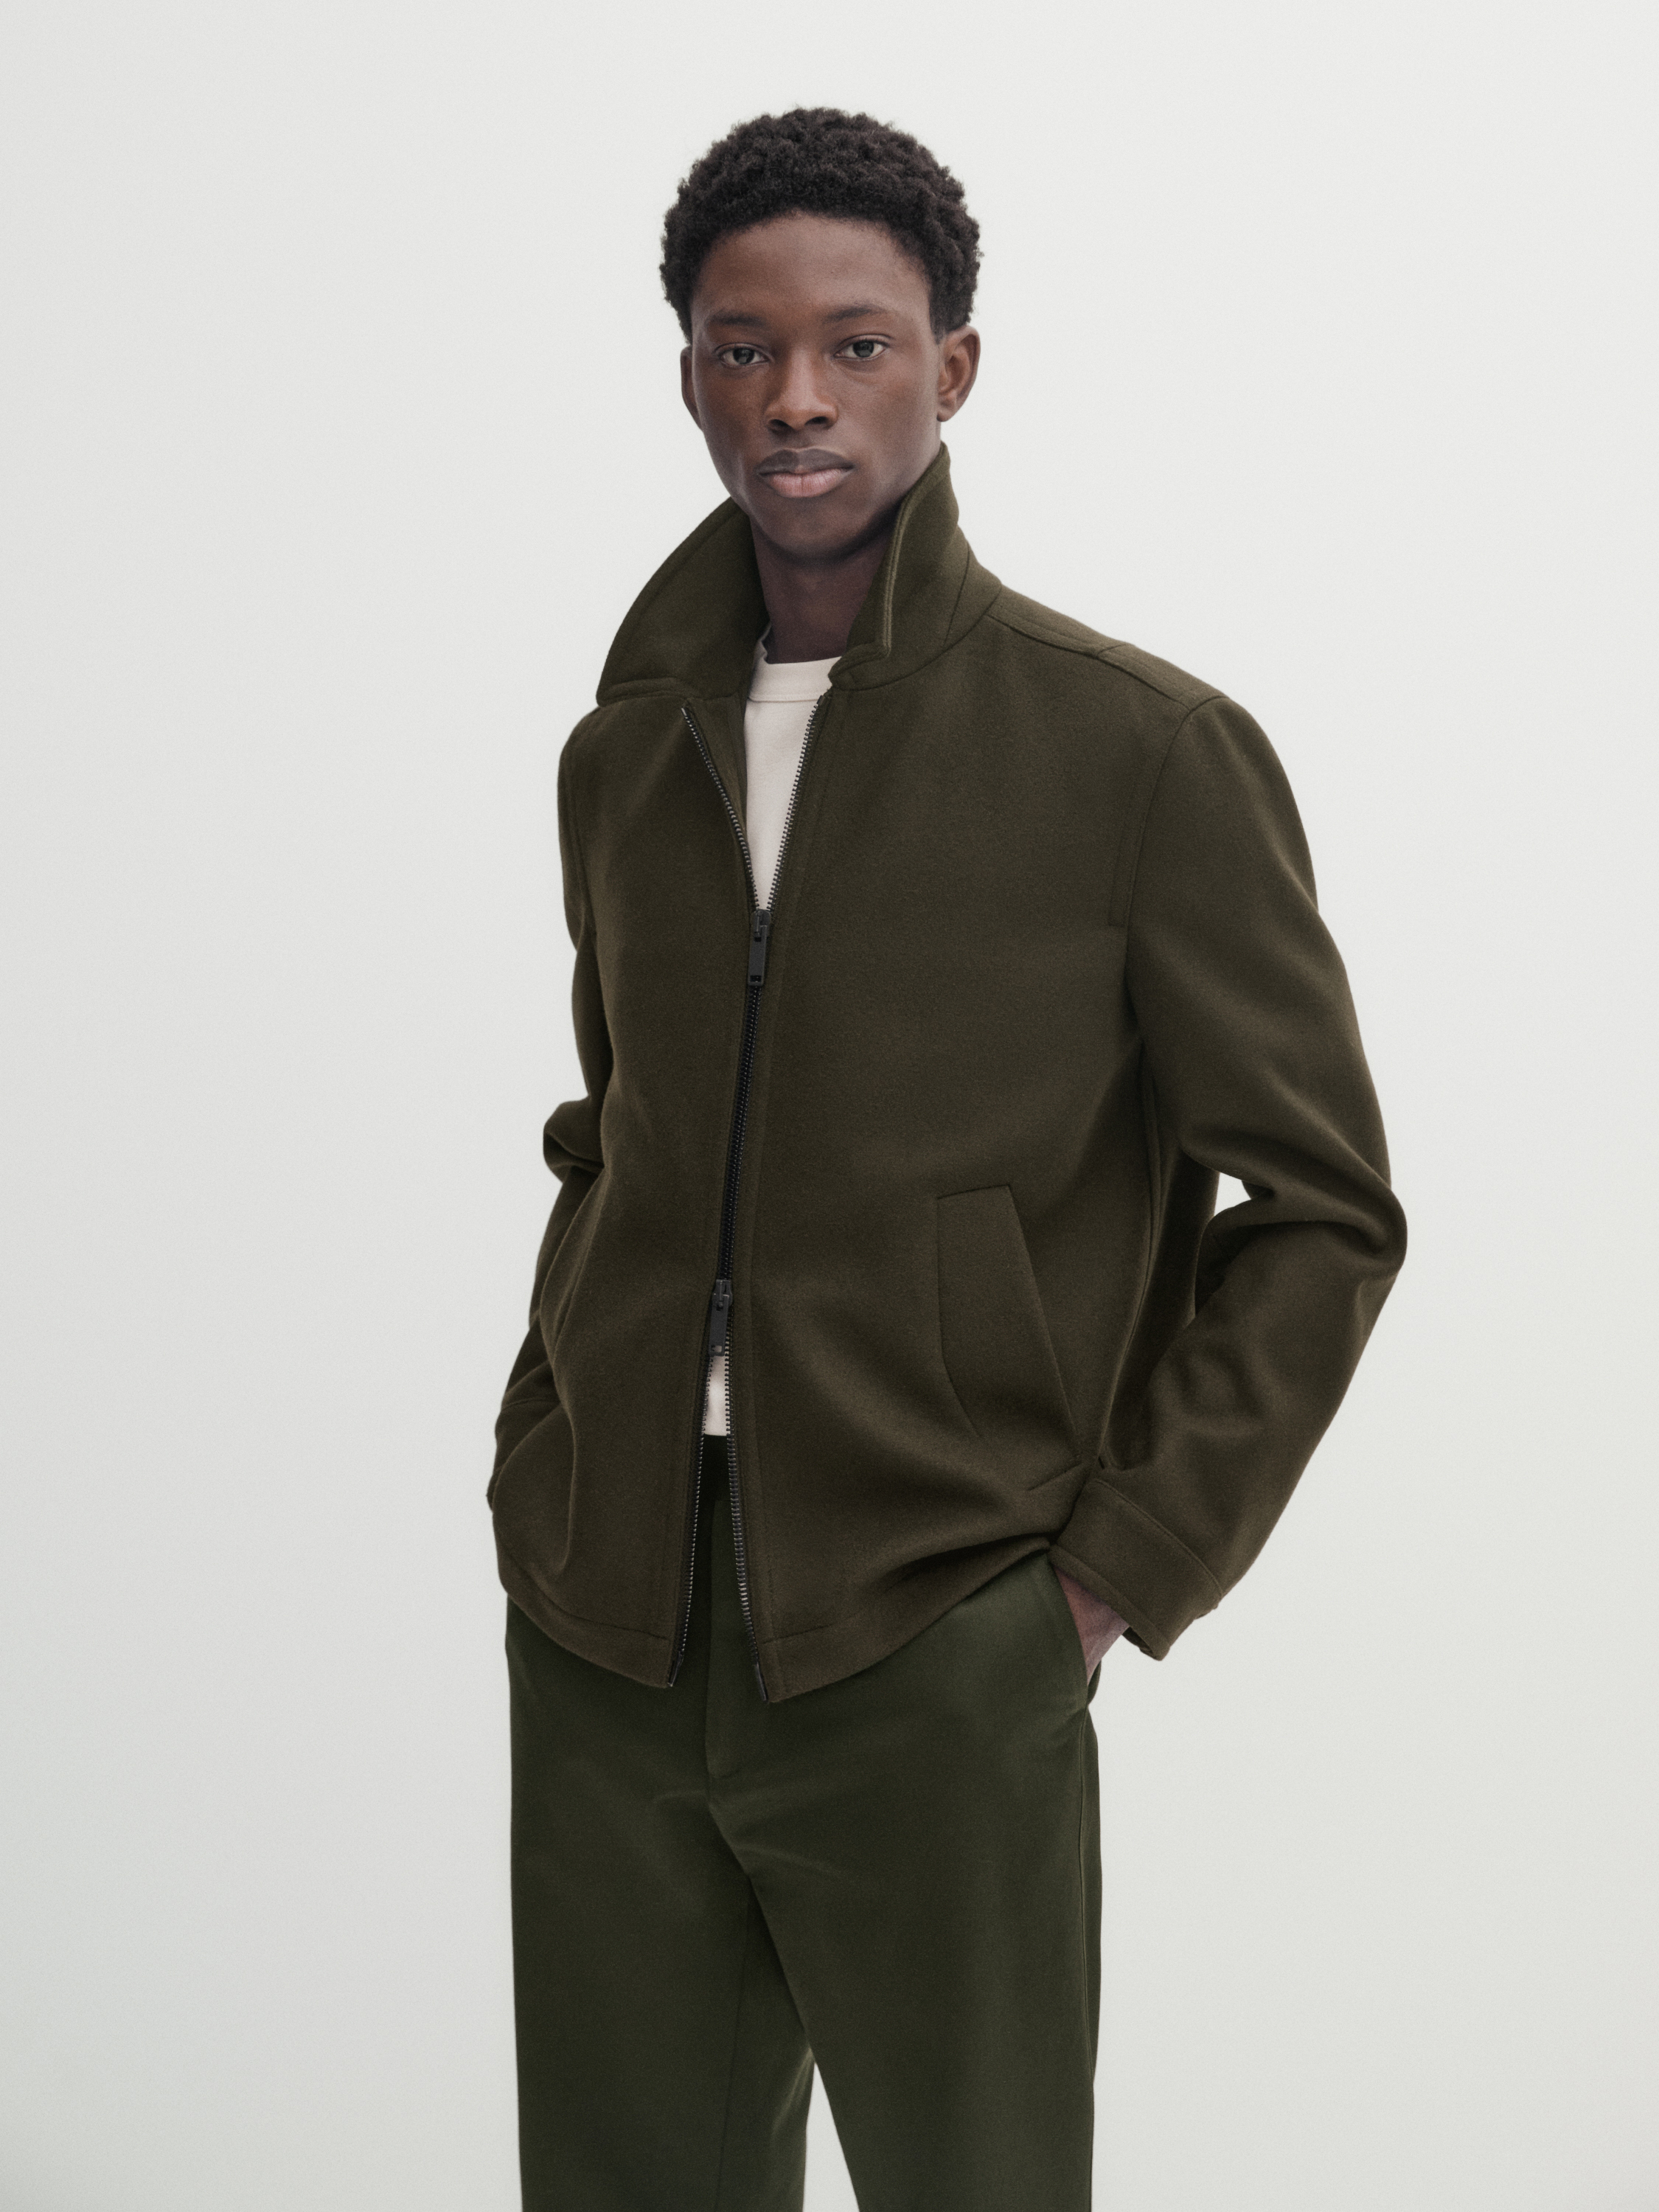 Wool blend jacket with zip - Studio